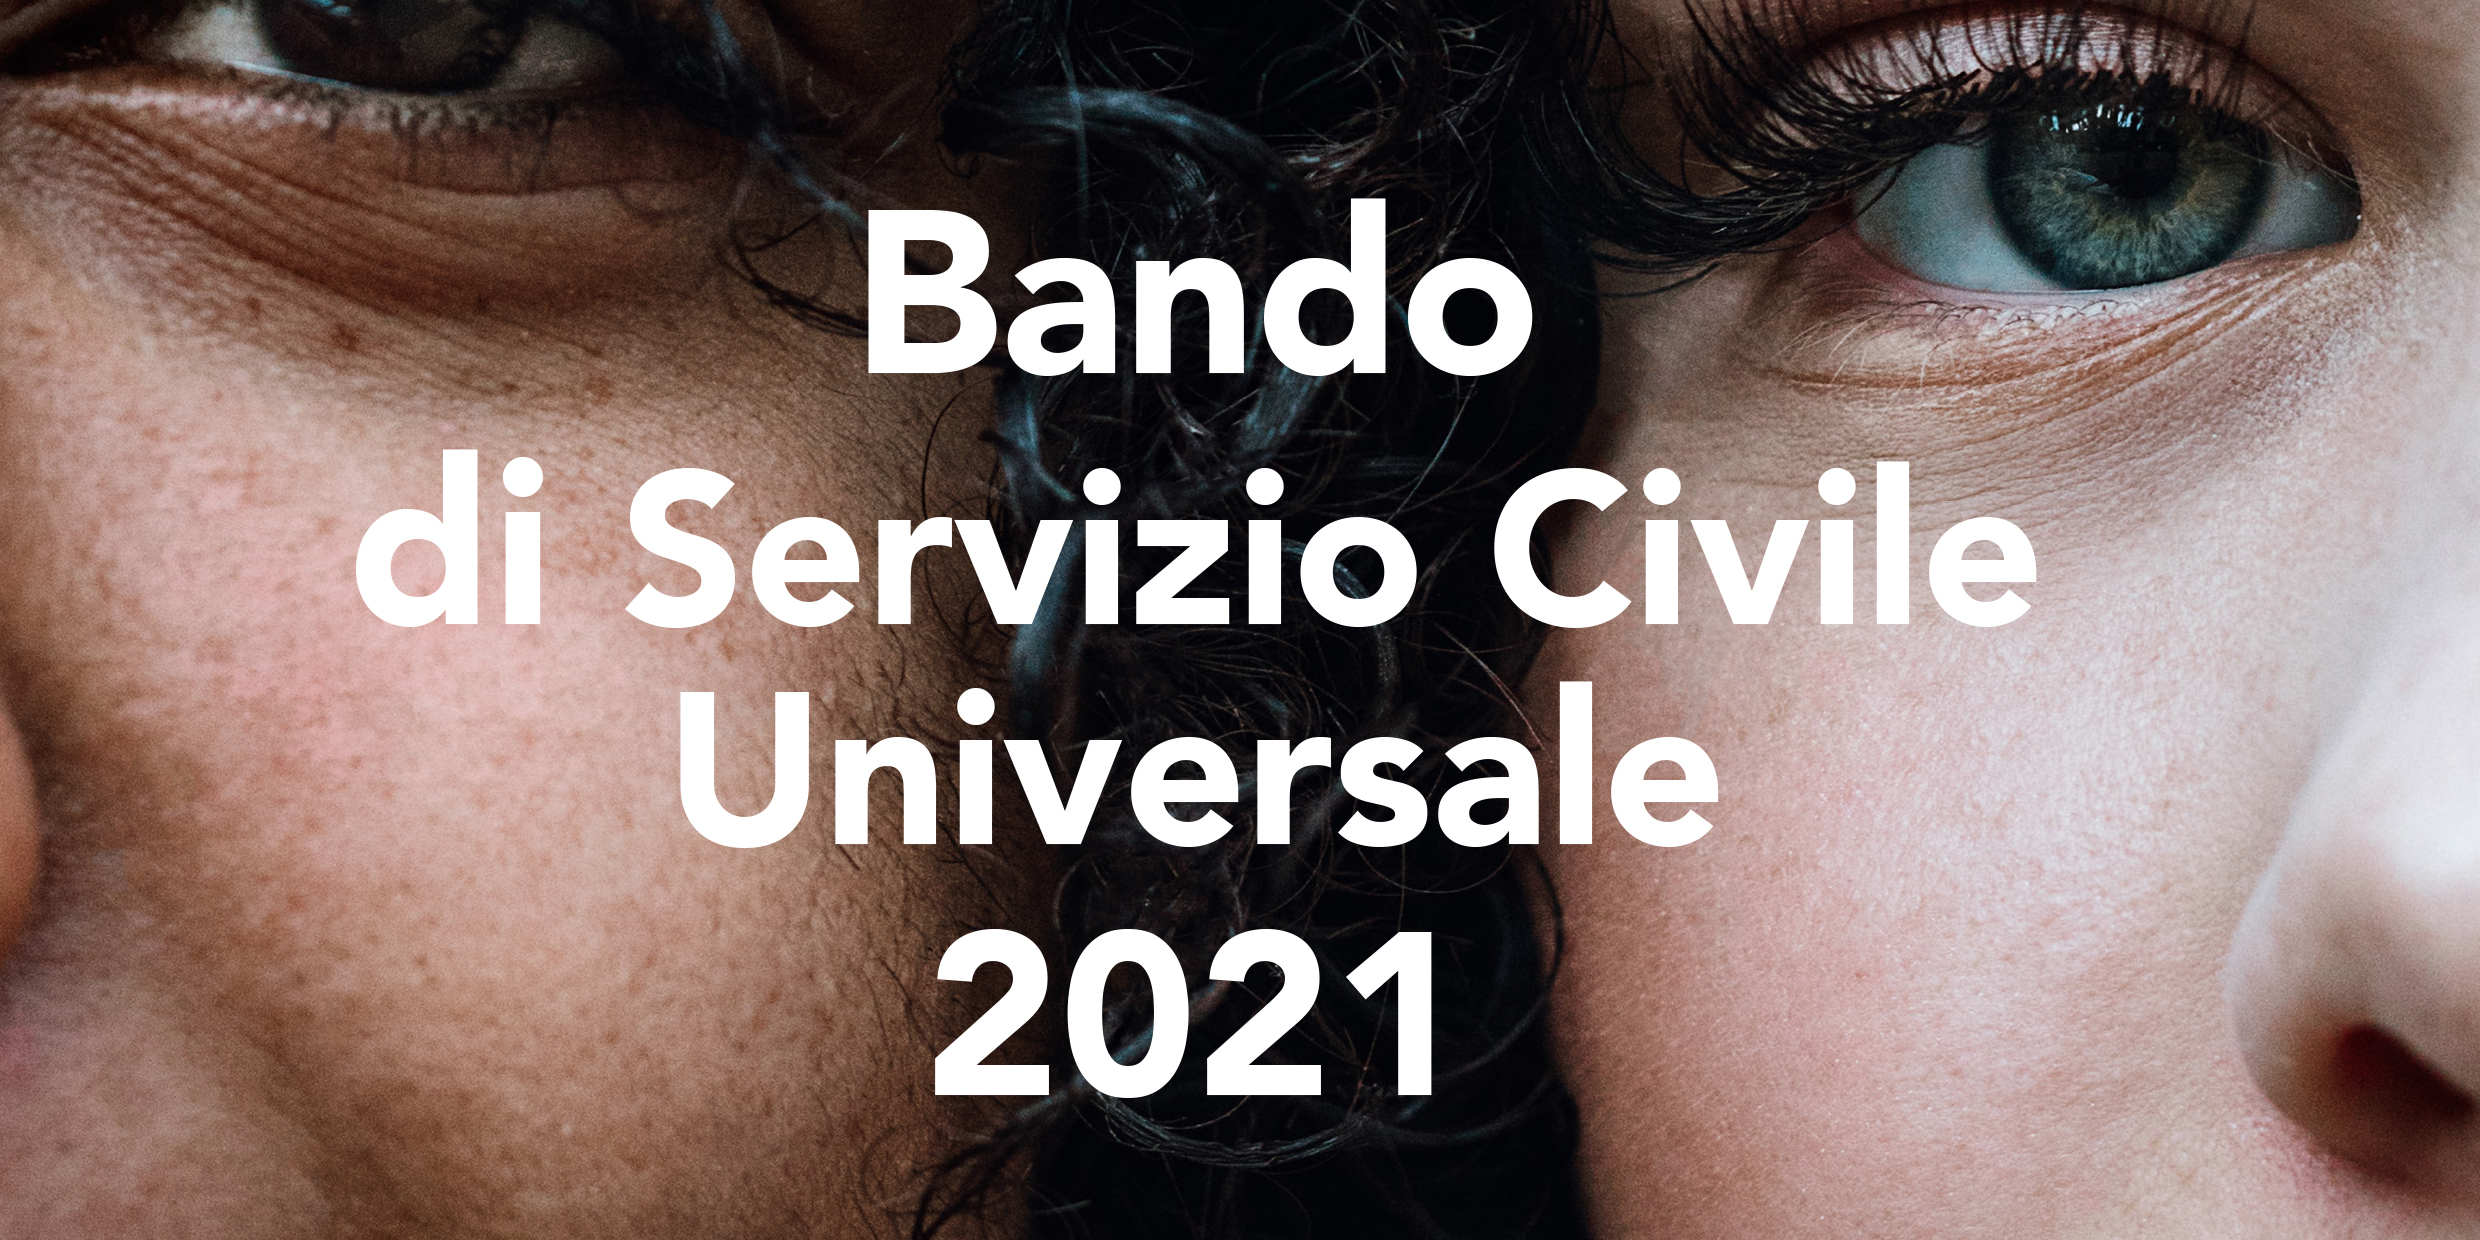 Bando di servizio civile universale 2021